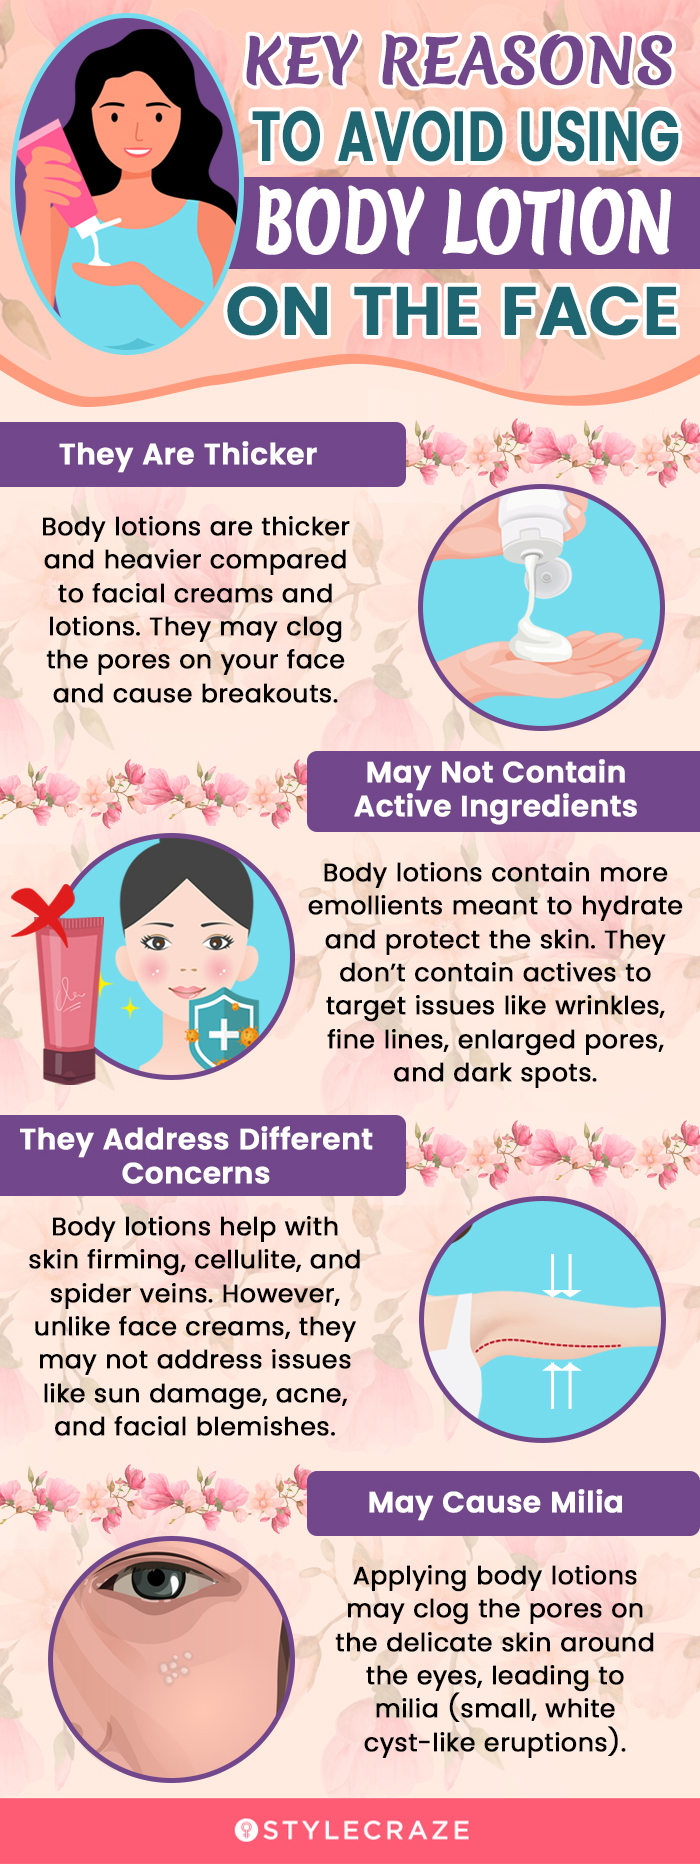 Razones principales para evitar usar loción corporal en la cara [infographic]